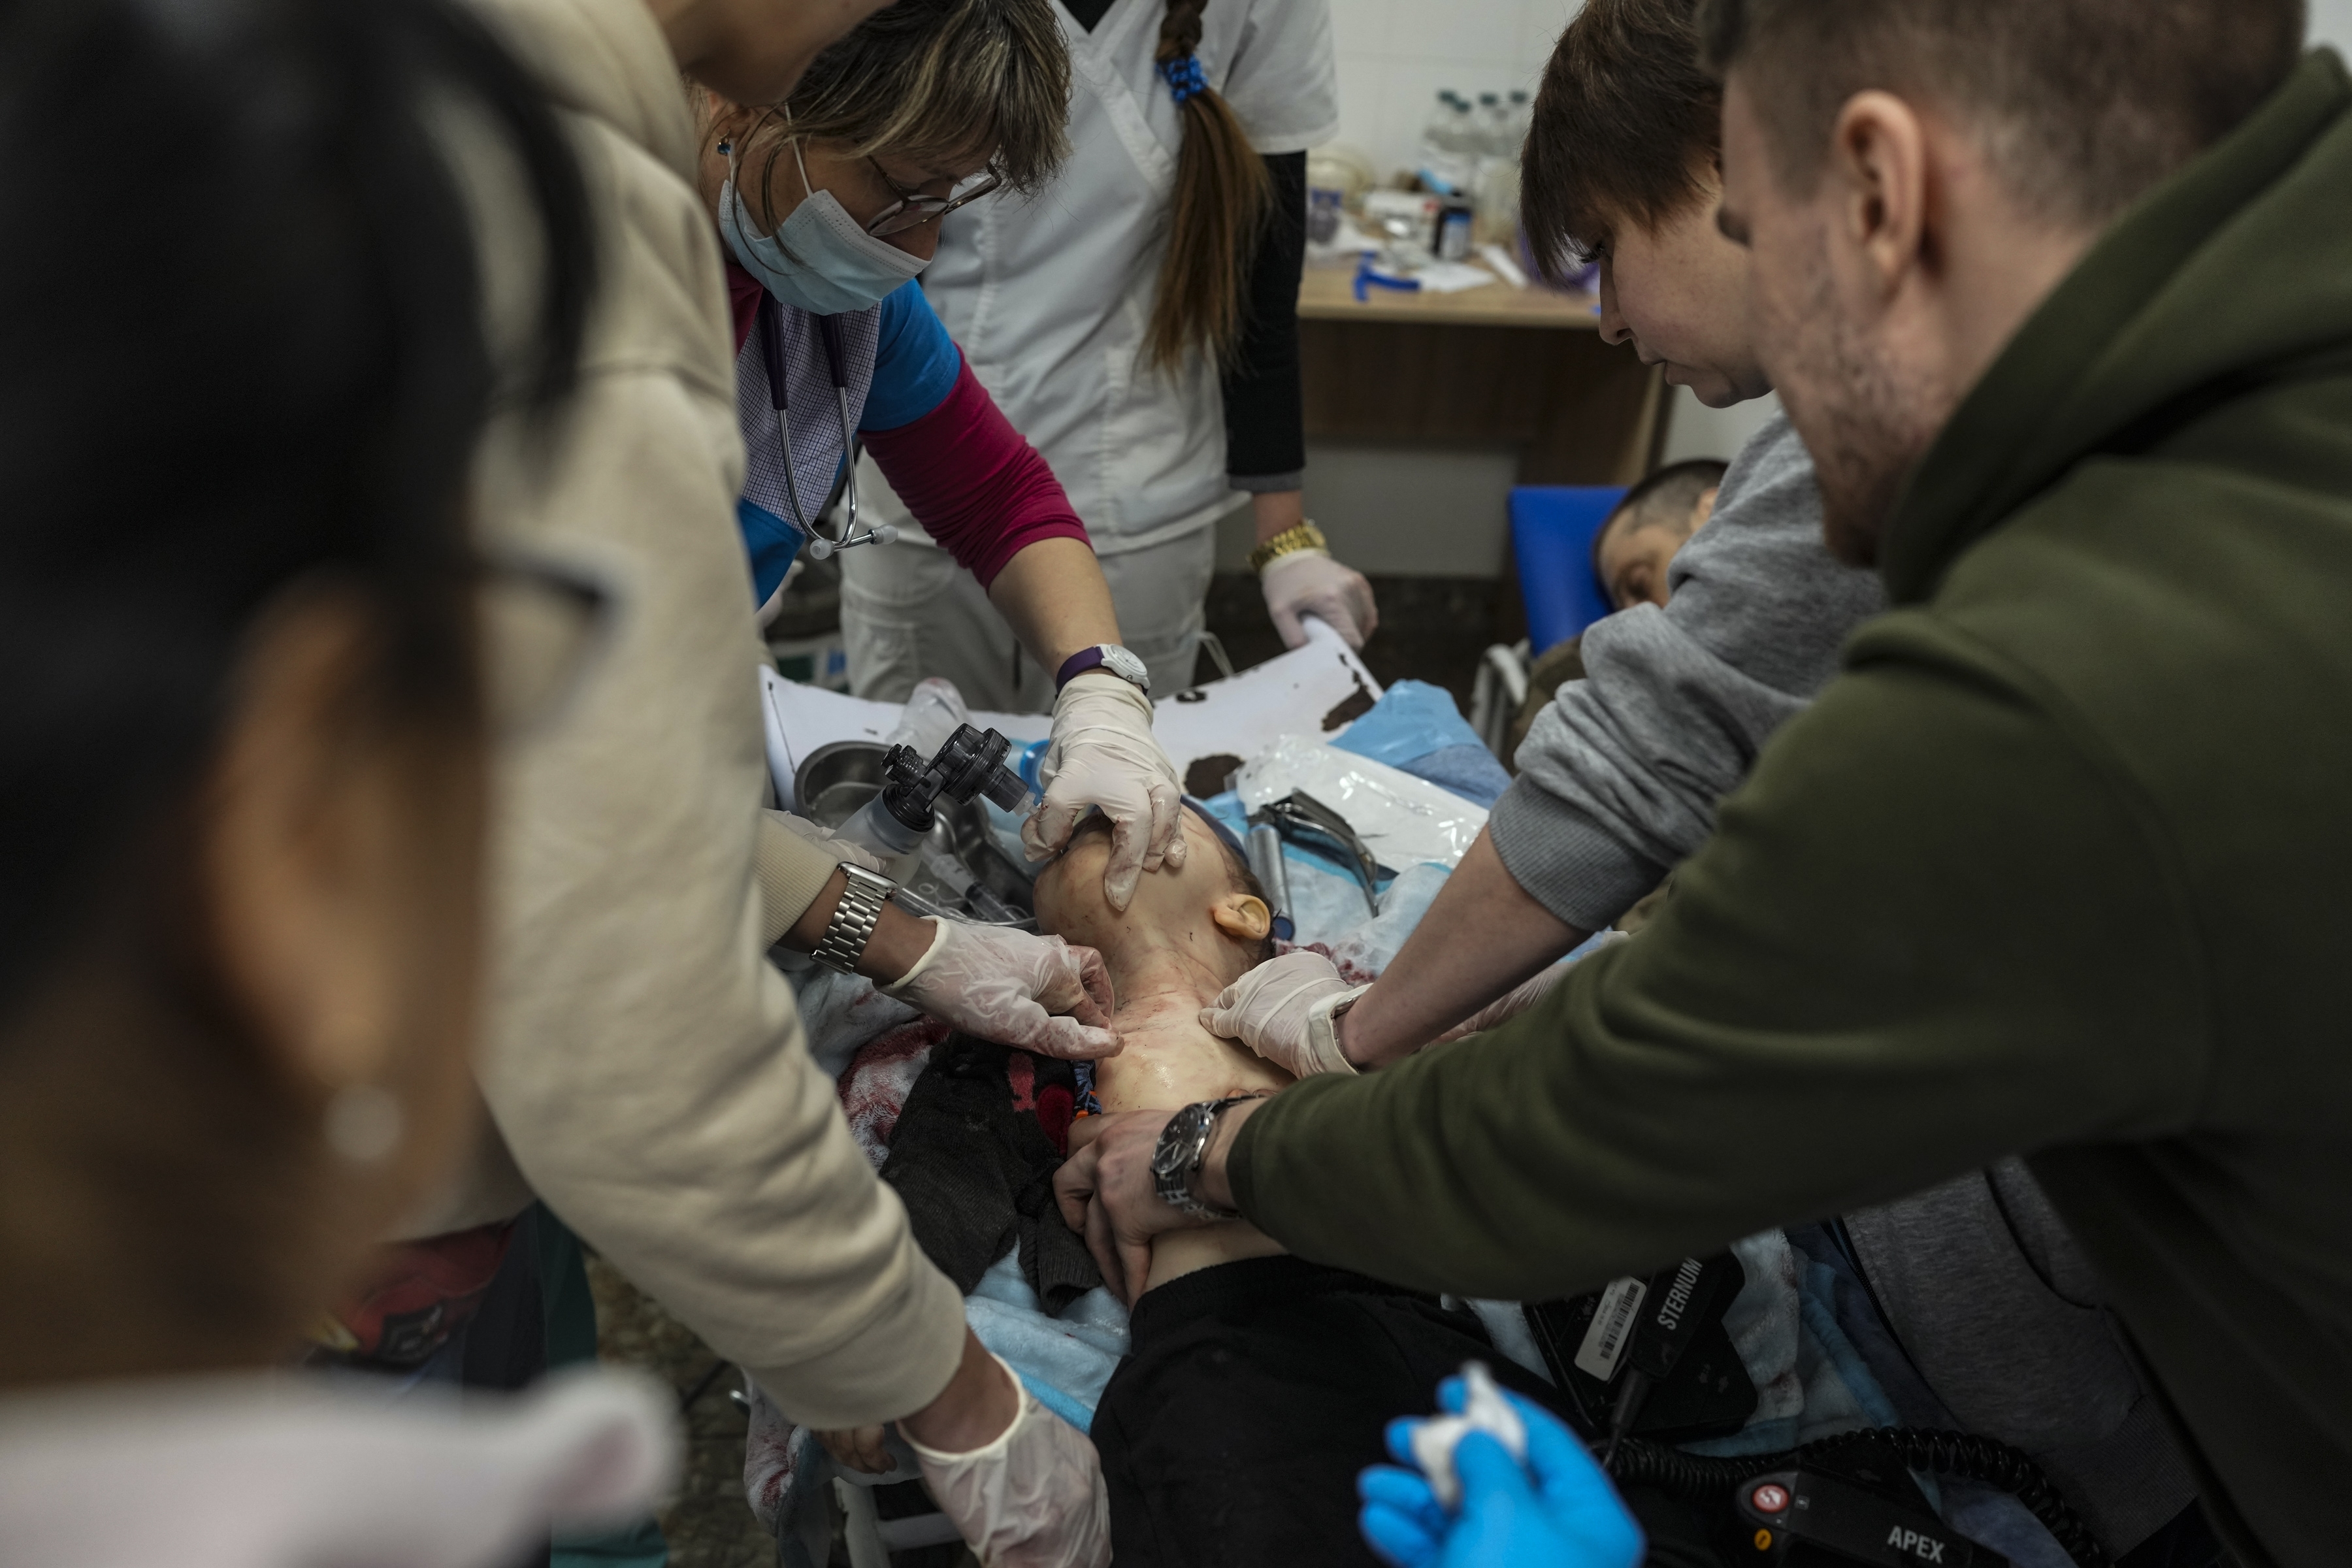 Si bien los fotógrafos de AP tomaron innumerables imágenes de escenas de guerra horribles, inquietantes y desgarradoras, también fueron testigos de actos valientes de soldados y personas comunes. En esta imagen, los trabajadores médicos intentan sin éxito salvar la vida del hijo de 18 meses de Marina Yatsko, Kirill, quien murió a causa de los bombardeos, en un hospital en Mariupol, Ucrania, el 4 de marzo de 2022 (Foto AP/Evgeniy Maloletka)